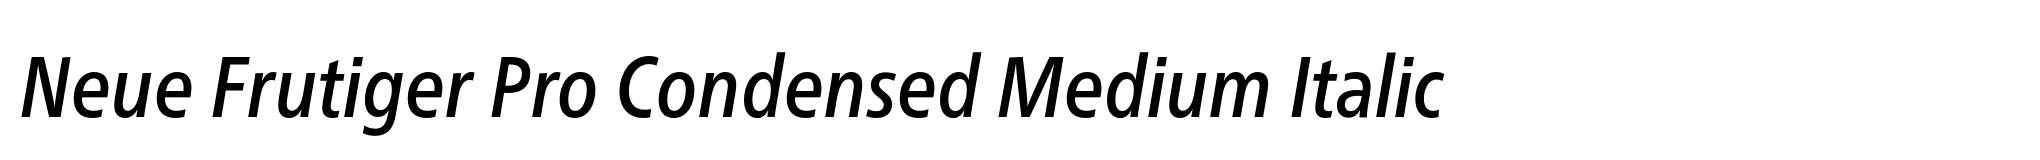 Neue Frutiger Pro Condensed Medium Italic image